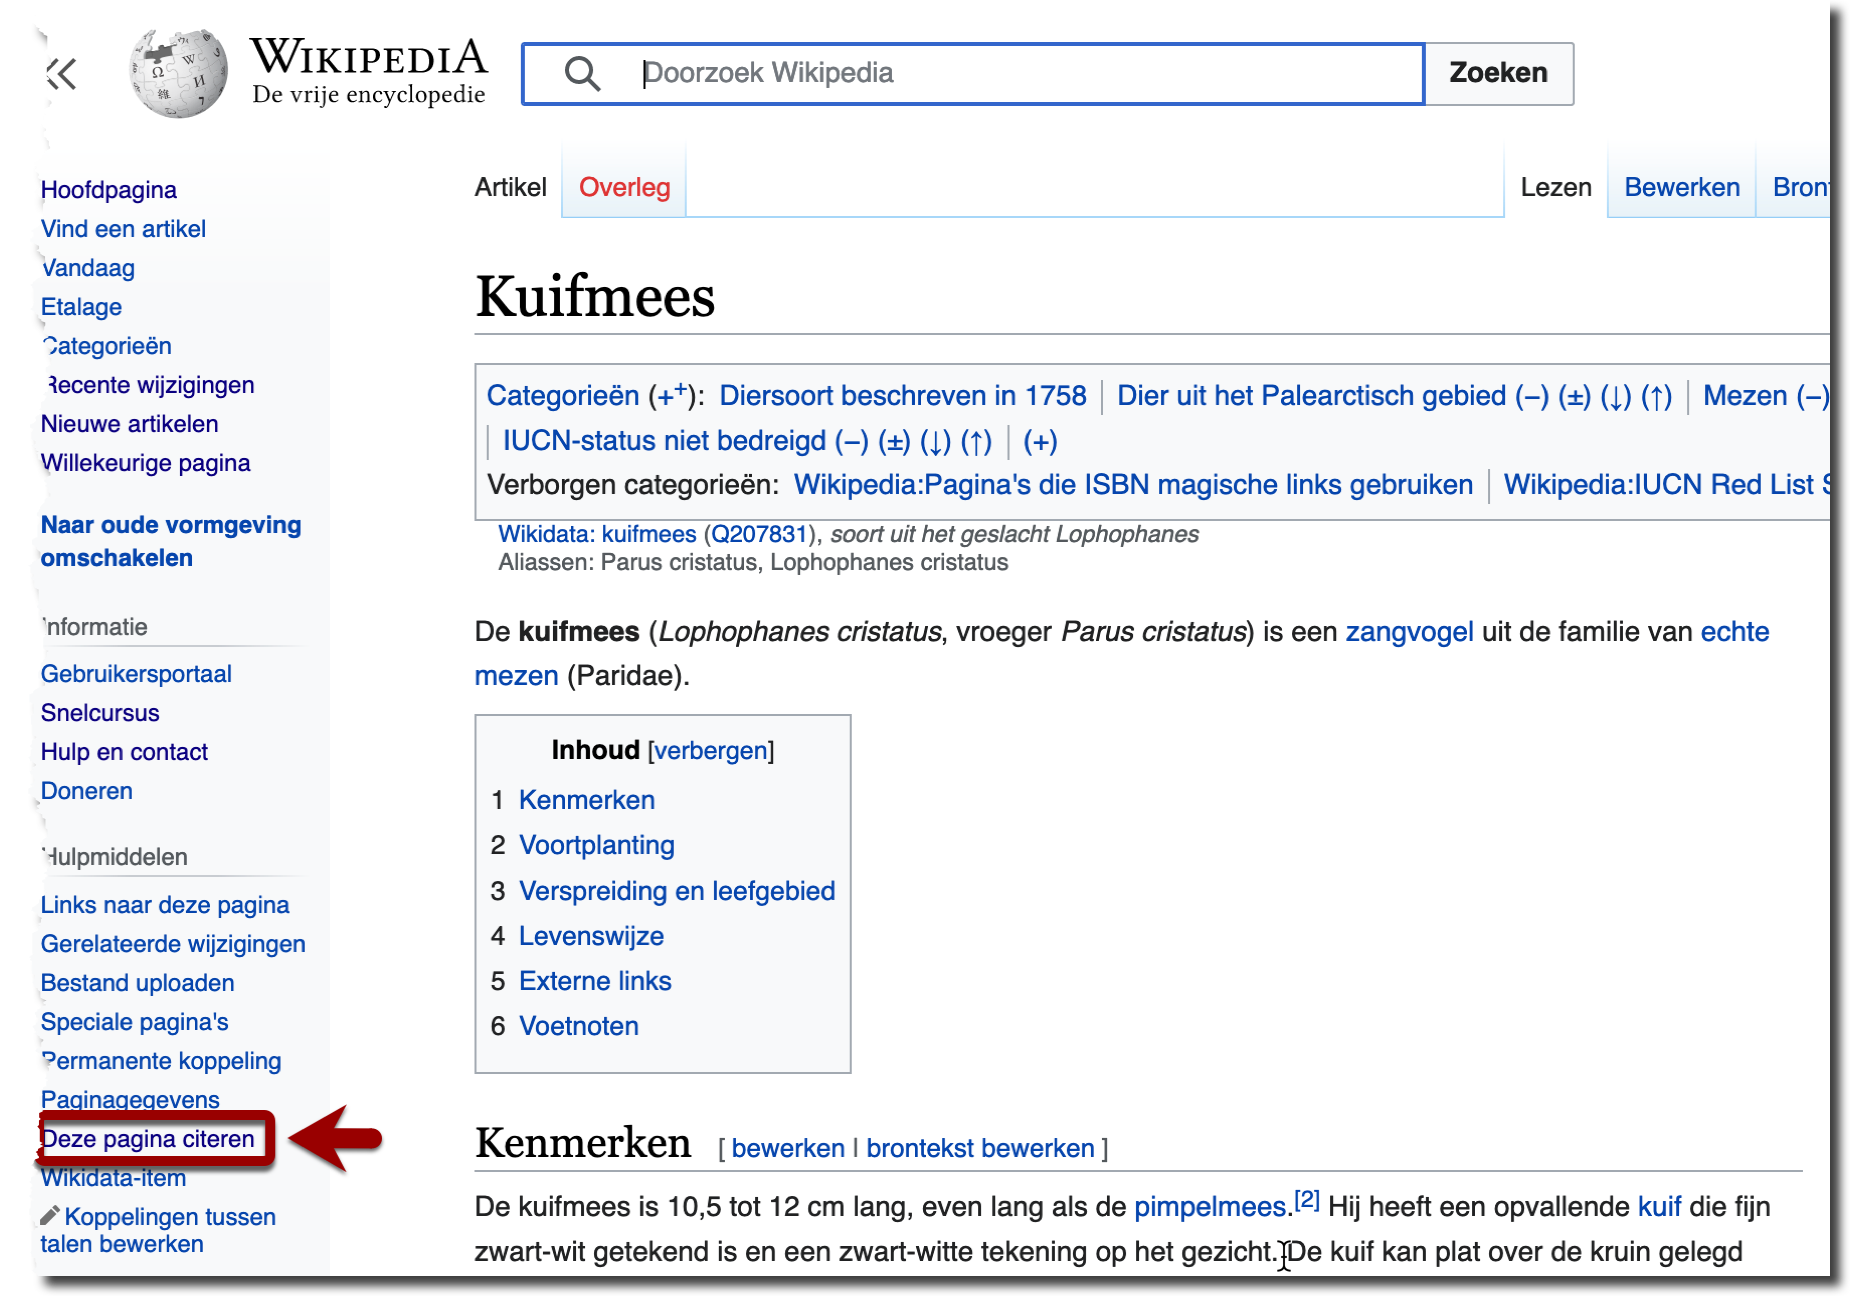 De optie 'deze pagina citeren' in het menu aan de linkerkant van een Wikipedia artikel 